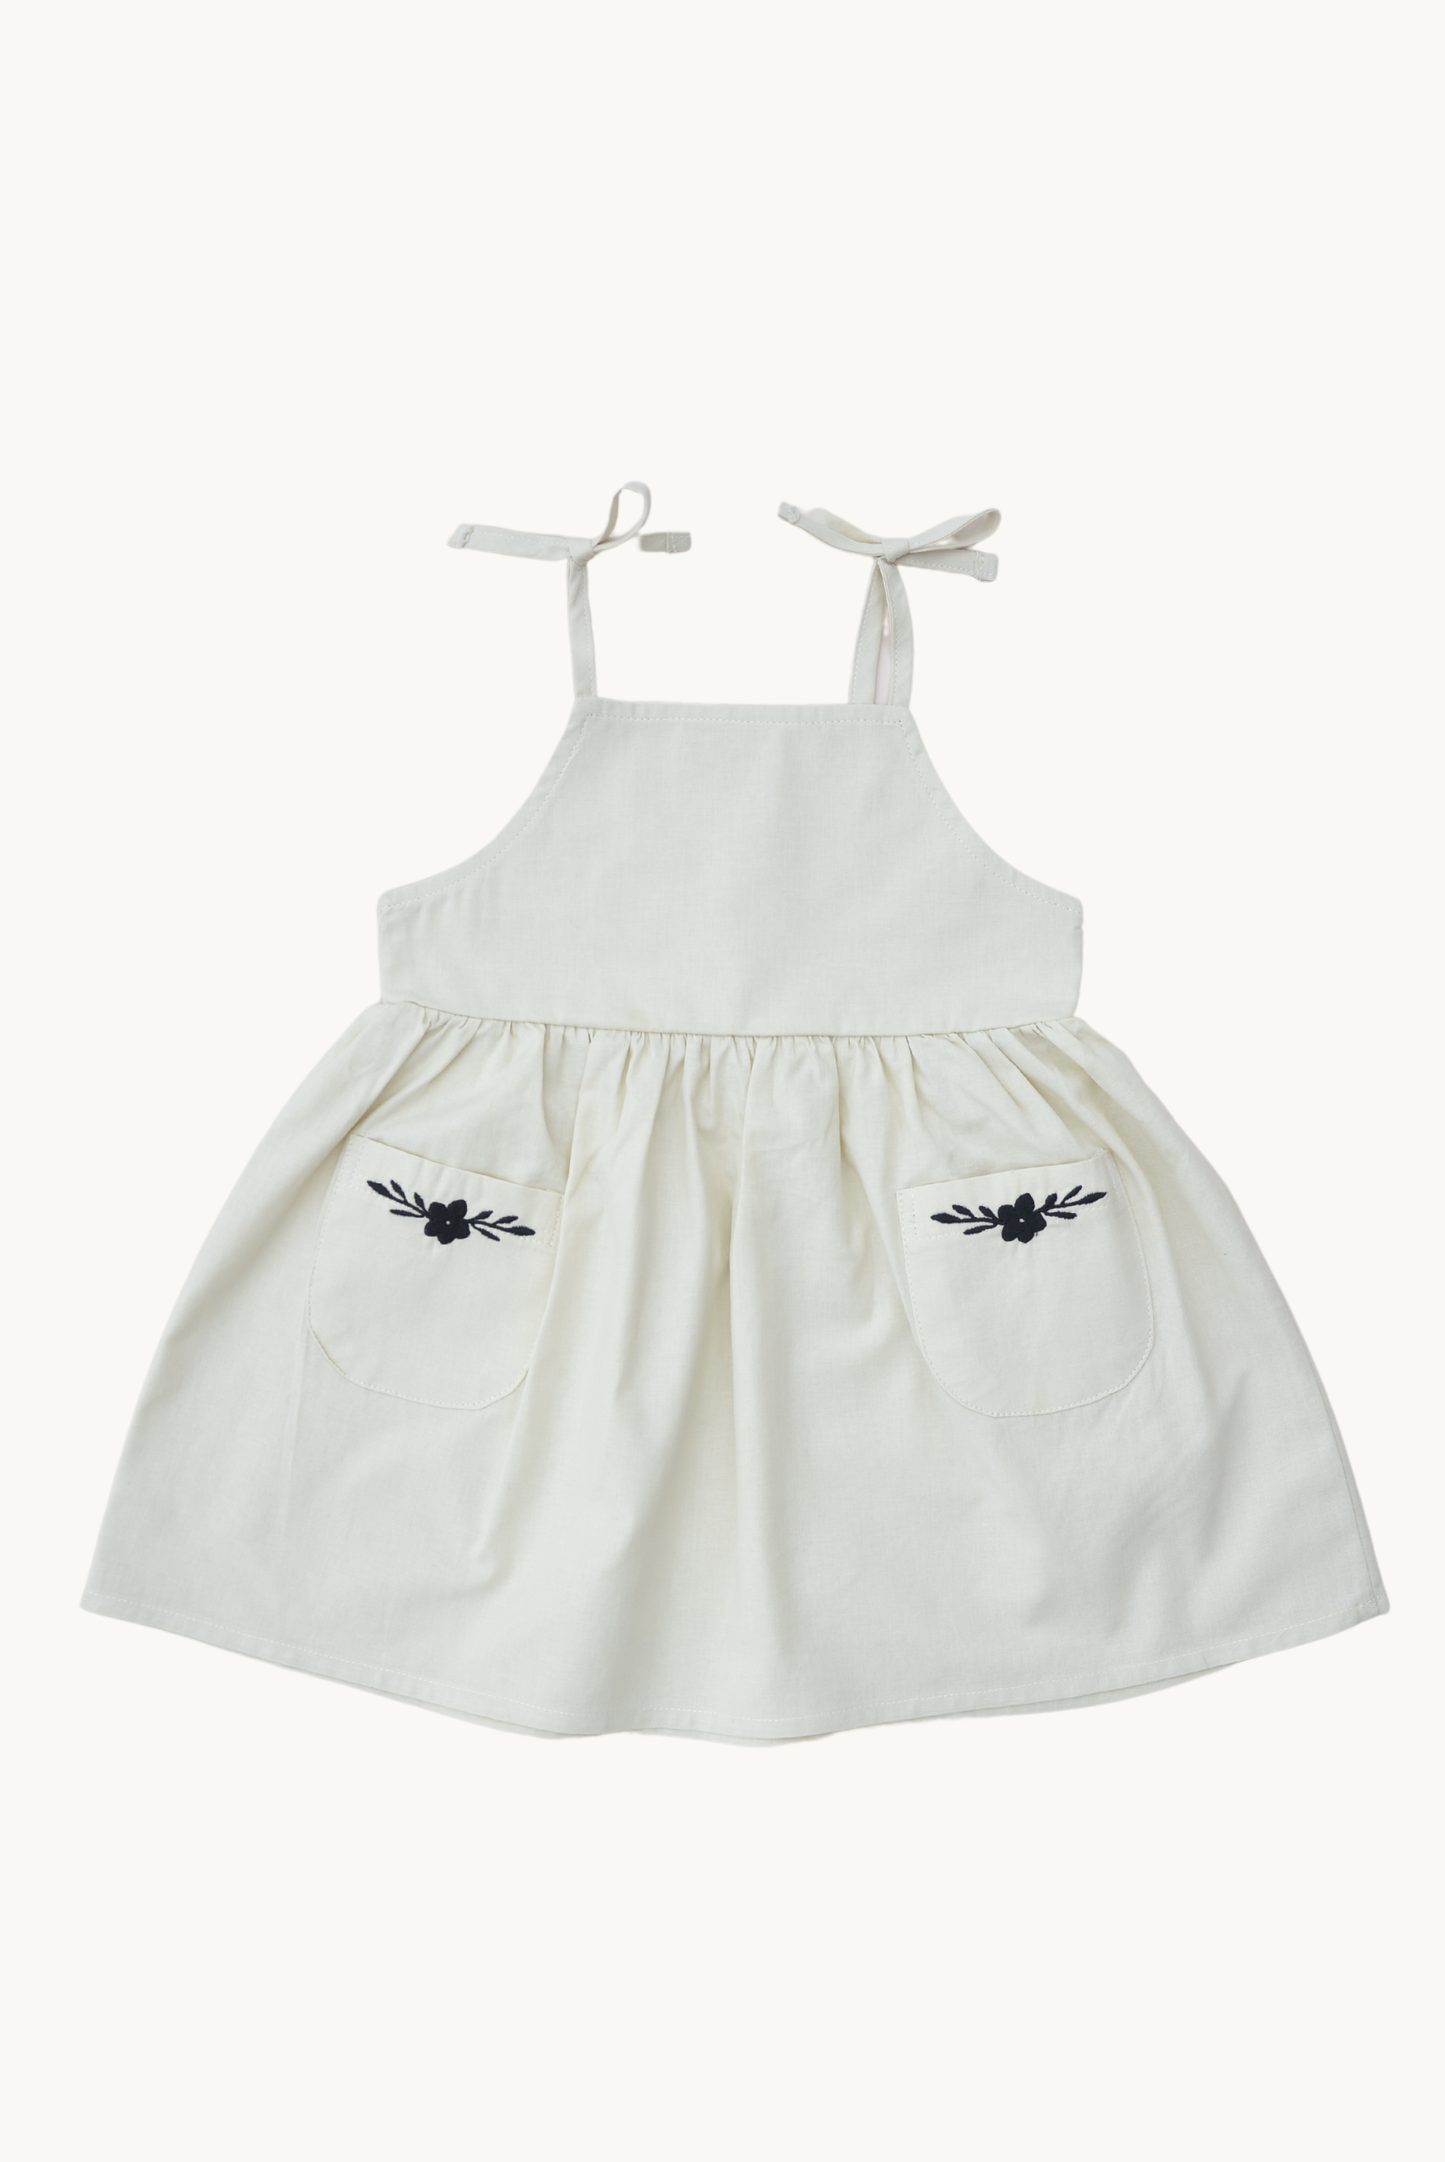 Eli & Nev - Baby / Girl Summer Dress